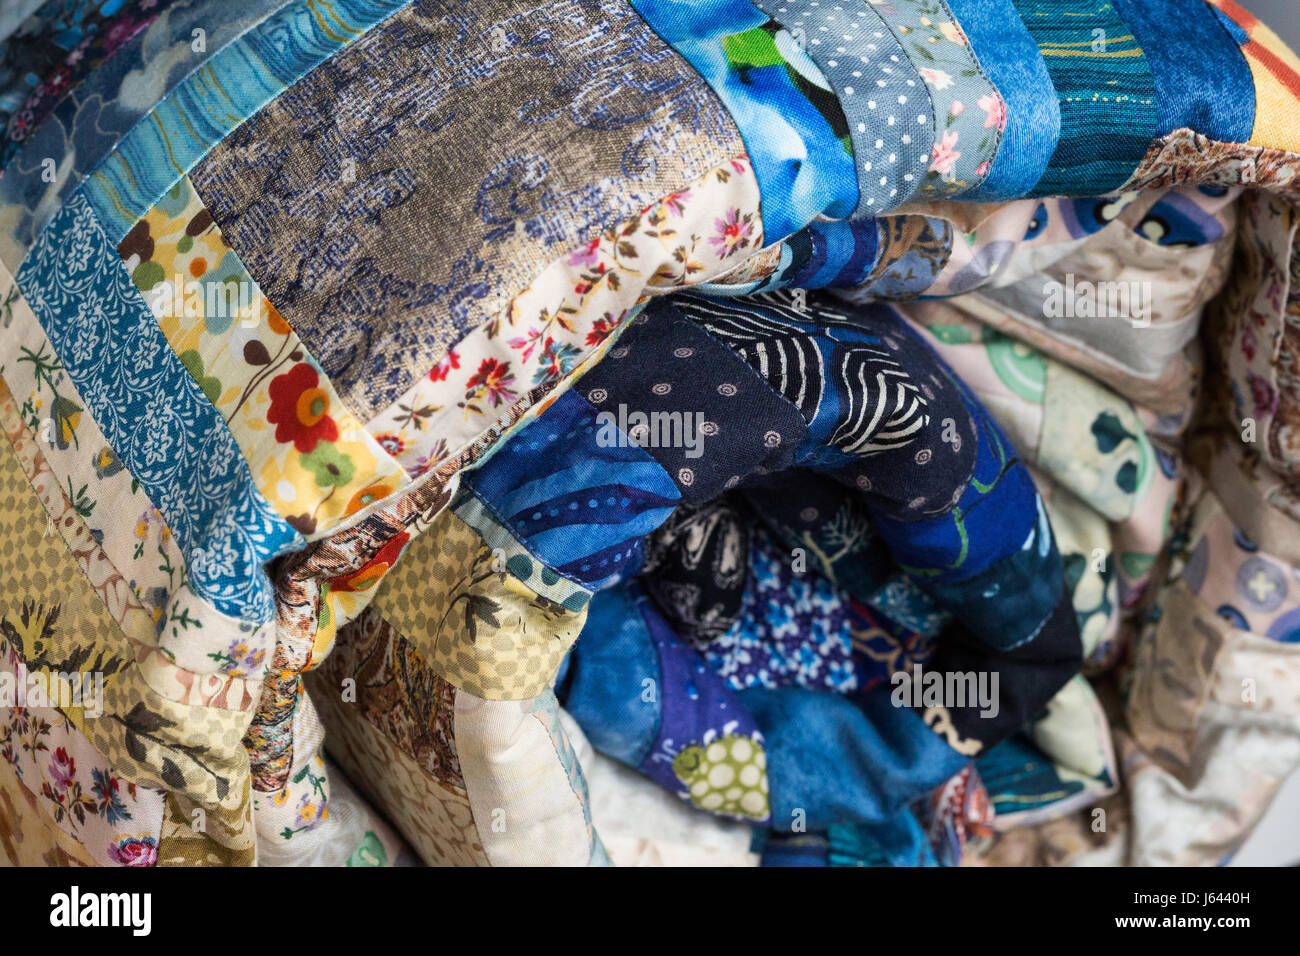 Nähen, Patchwork und Mode Konzept - Makro der leuchtend blaue schöne mehrfarbige gesteppte Decke zusammengerollt in der Röhre, Lager von fertigen Handarbeiten Produkten, Seitenansicht. Stockfoto